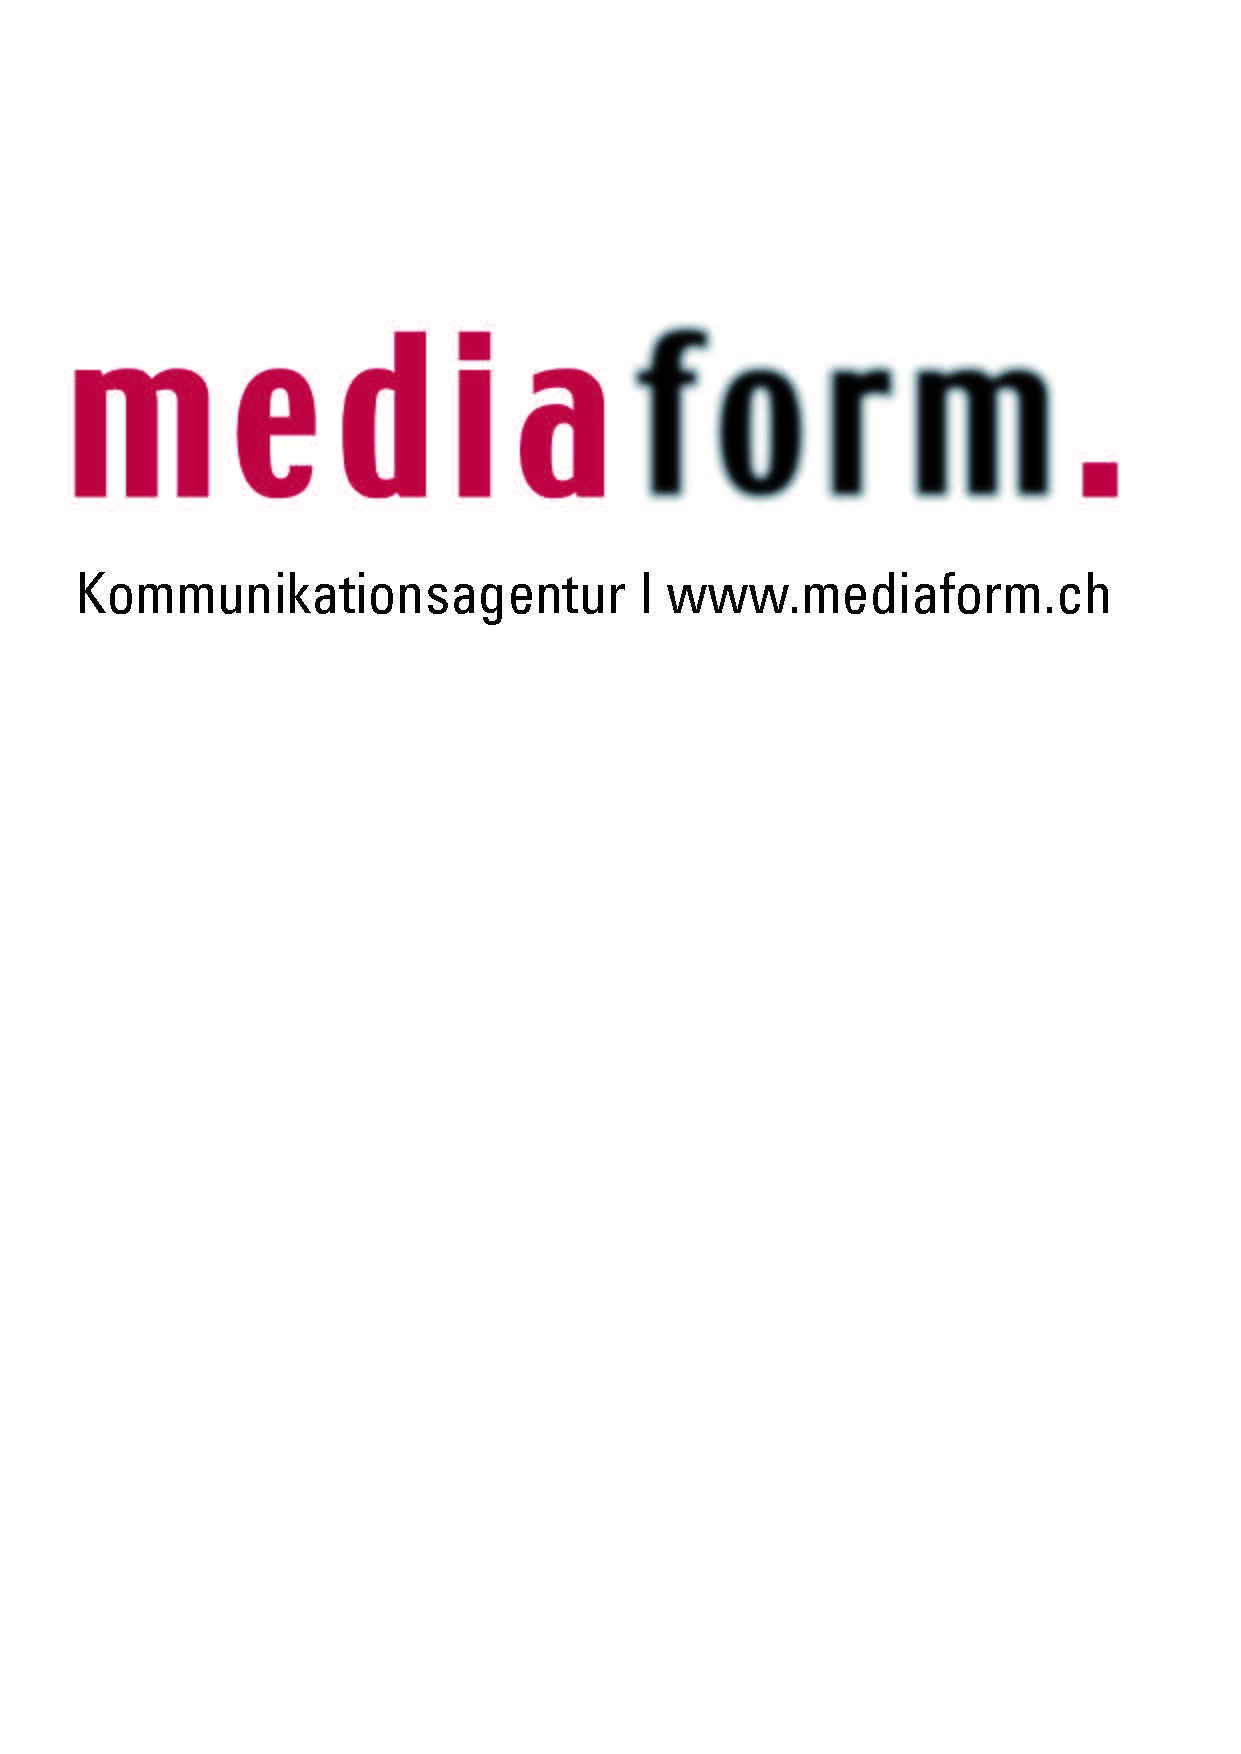 (c) Mediaform.ch